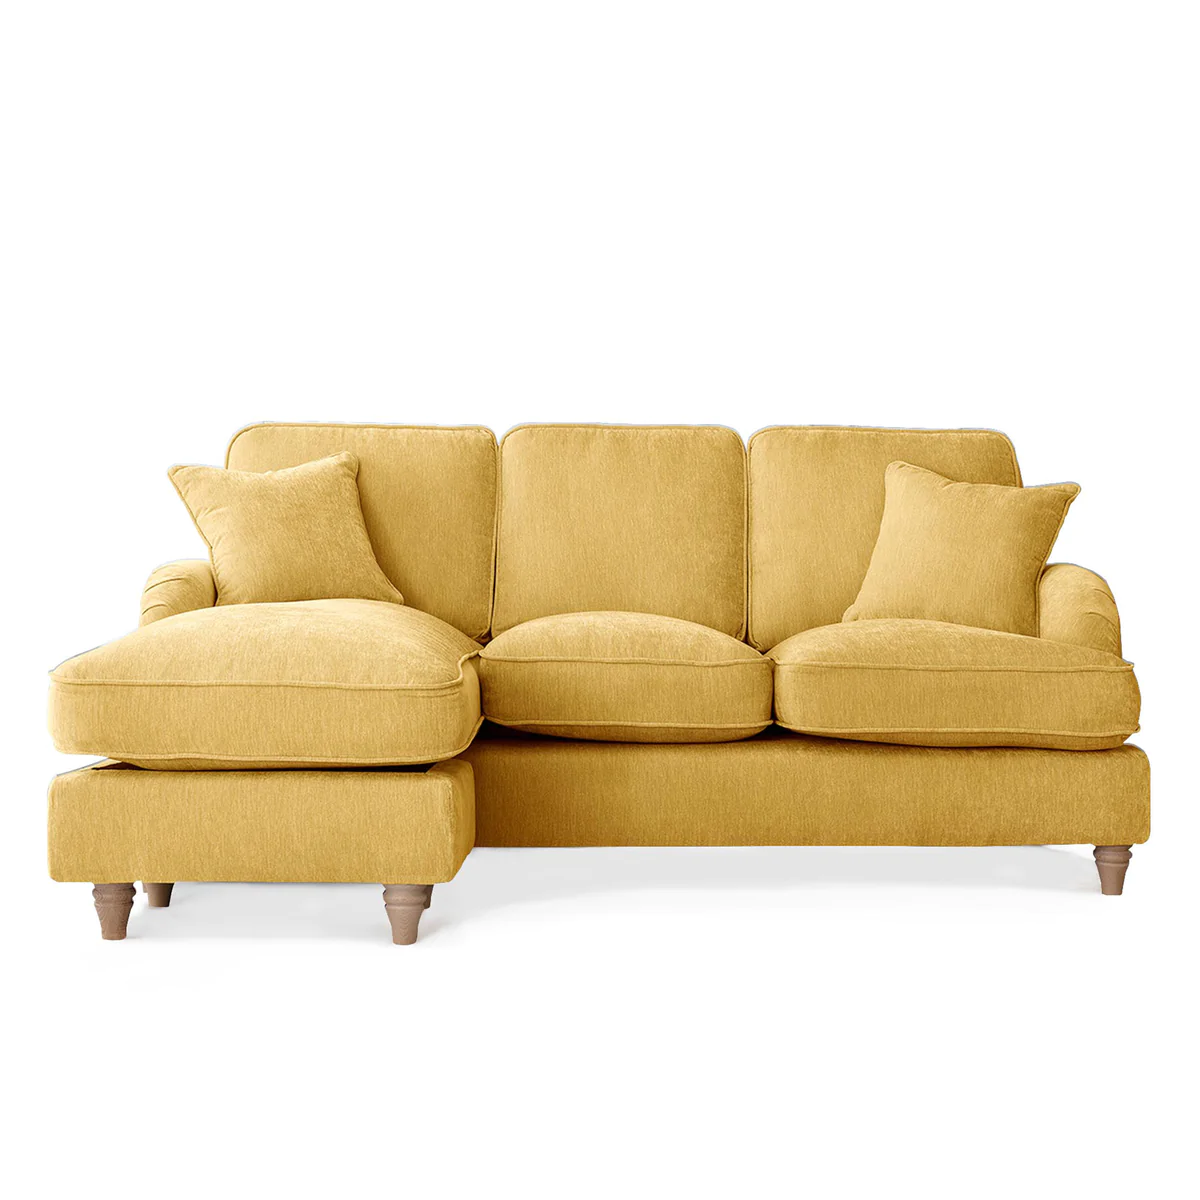 RFM01-05-002-004-arthur-left-hand-chaise-sofa-gold